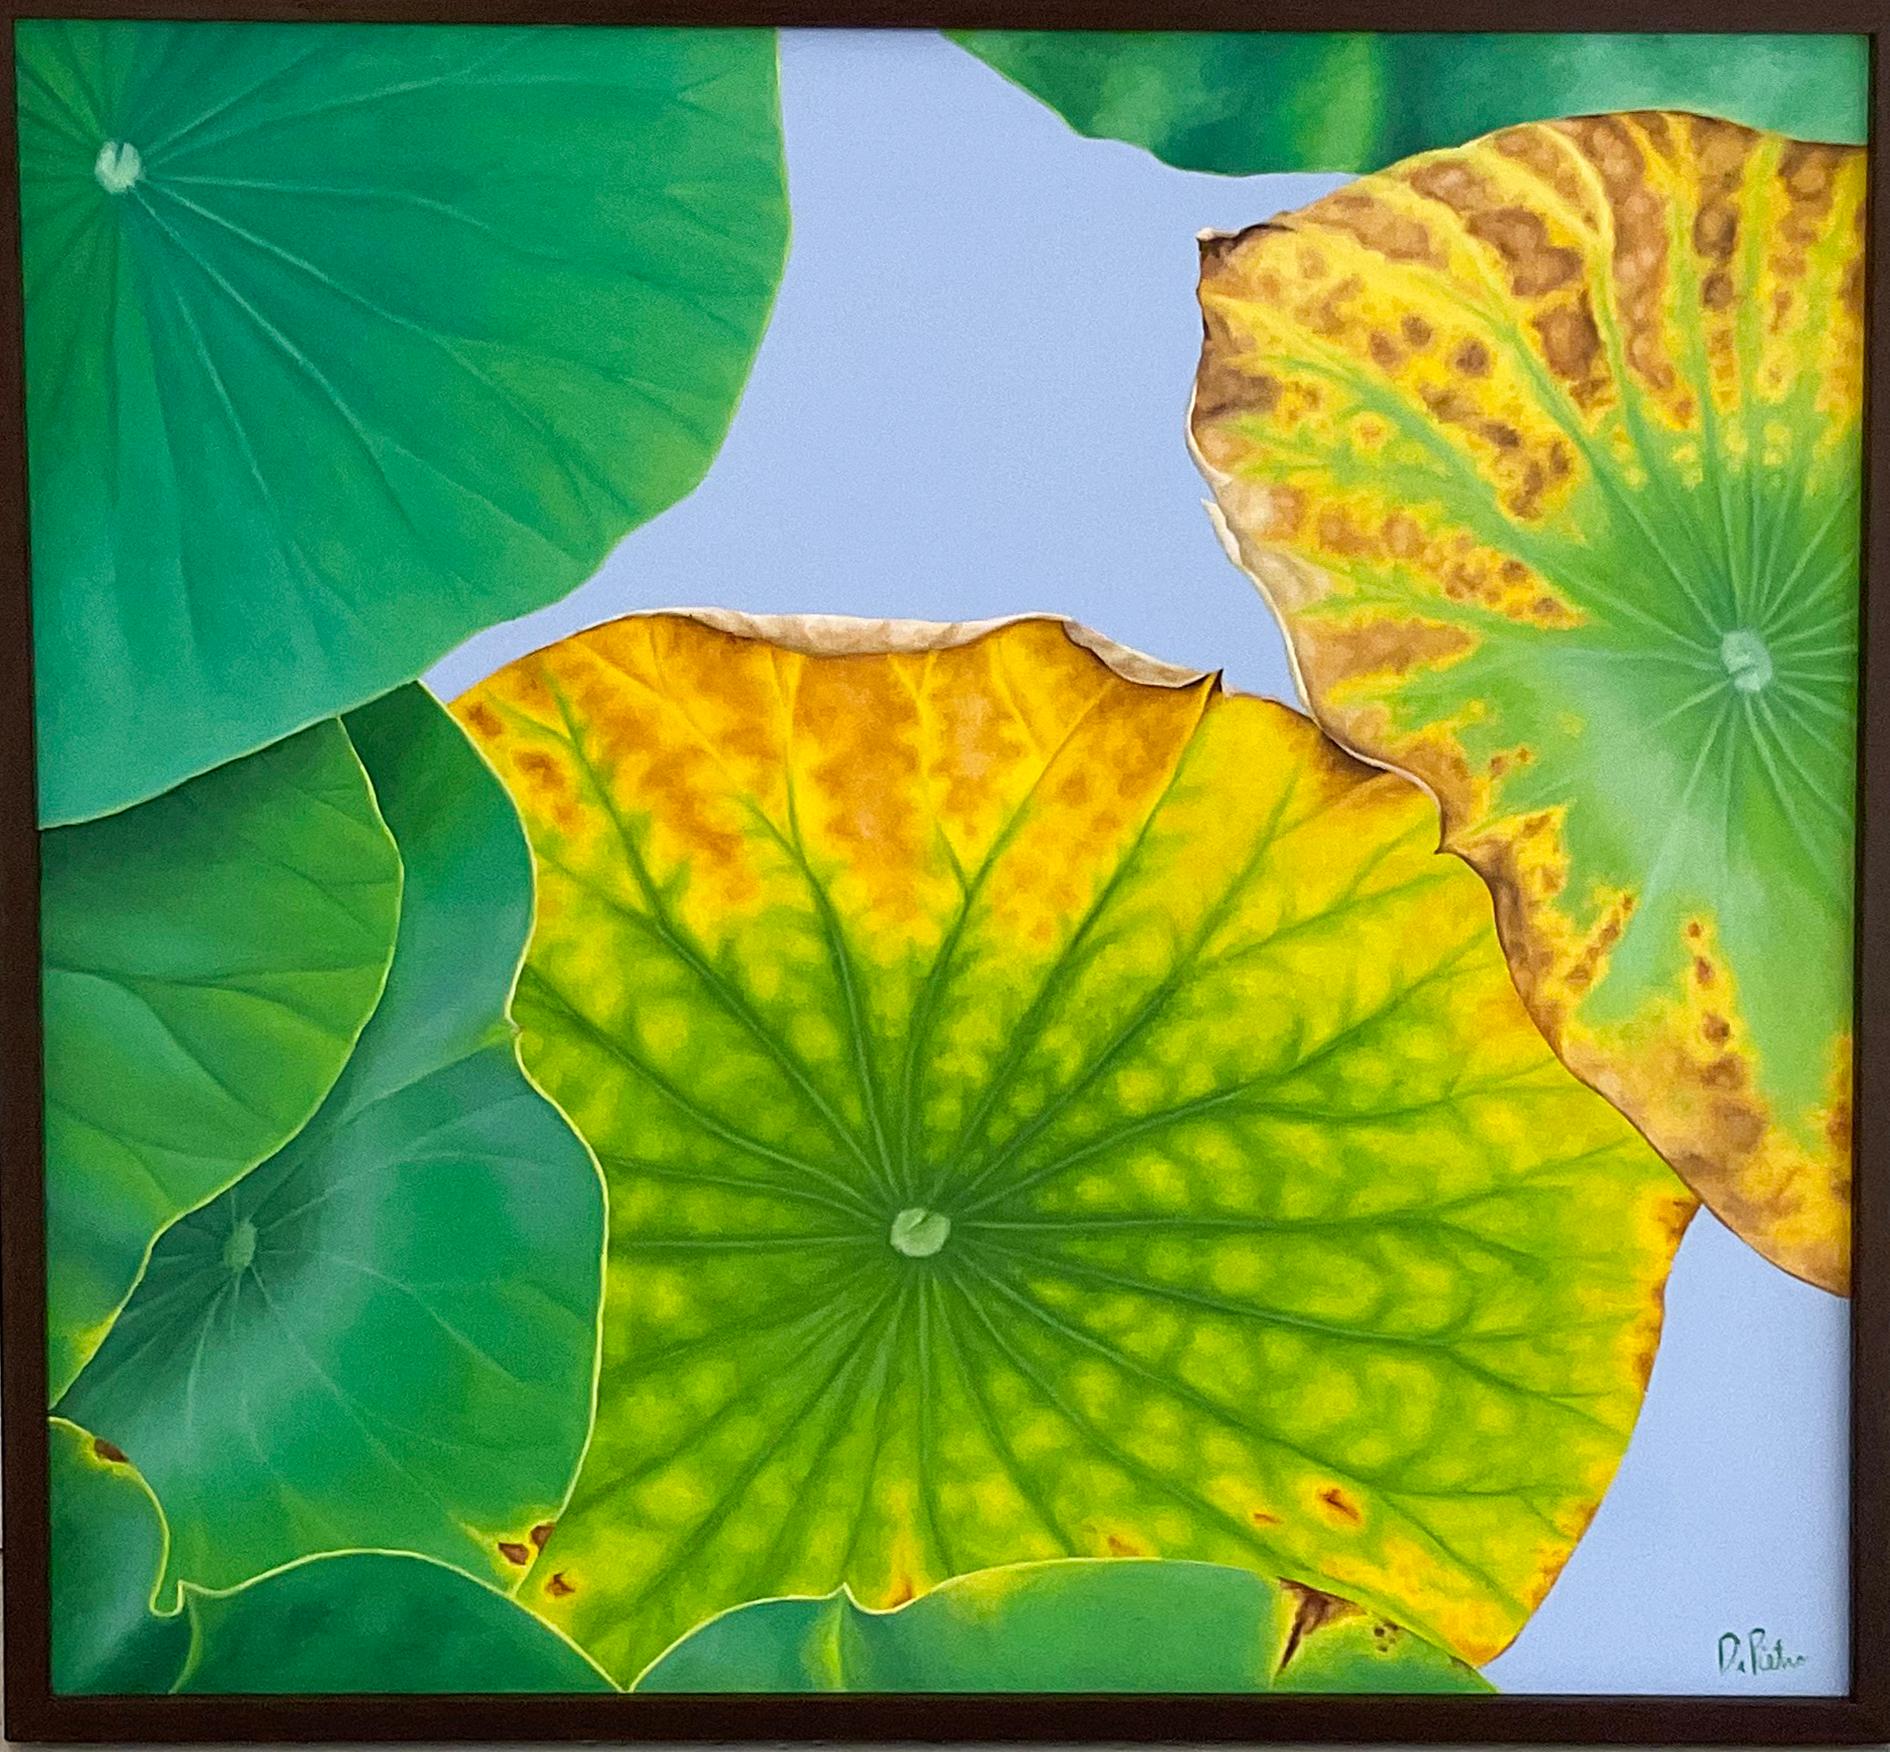 Lotus 30: Foto Realistisches Stillleben mit einem grünen Lotusblatt auf Grau 